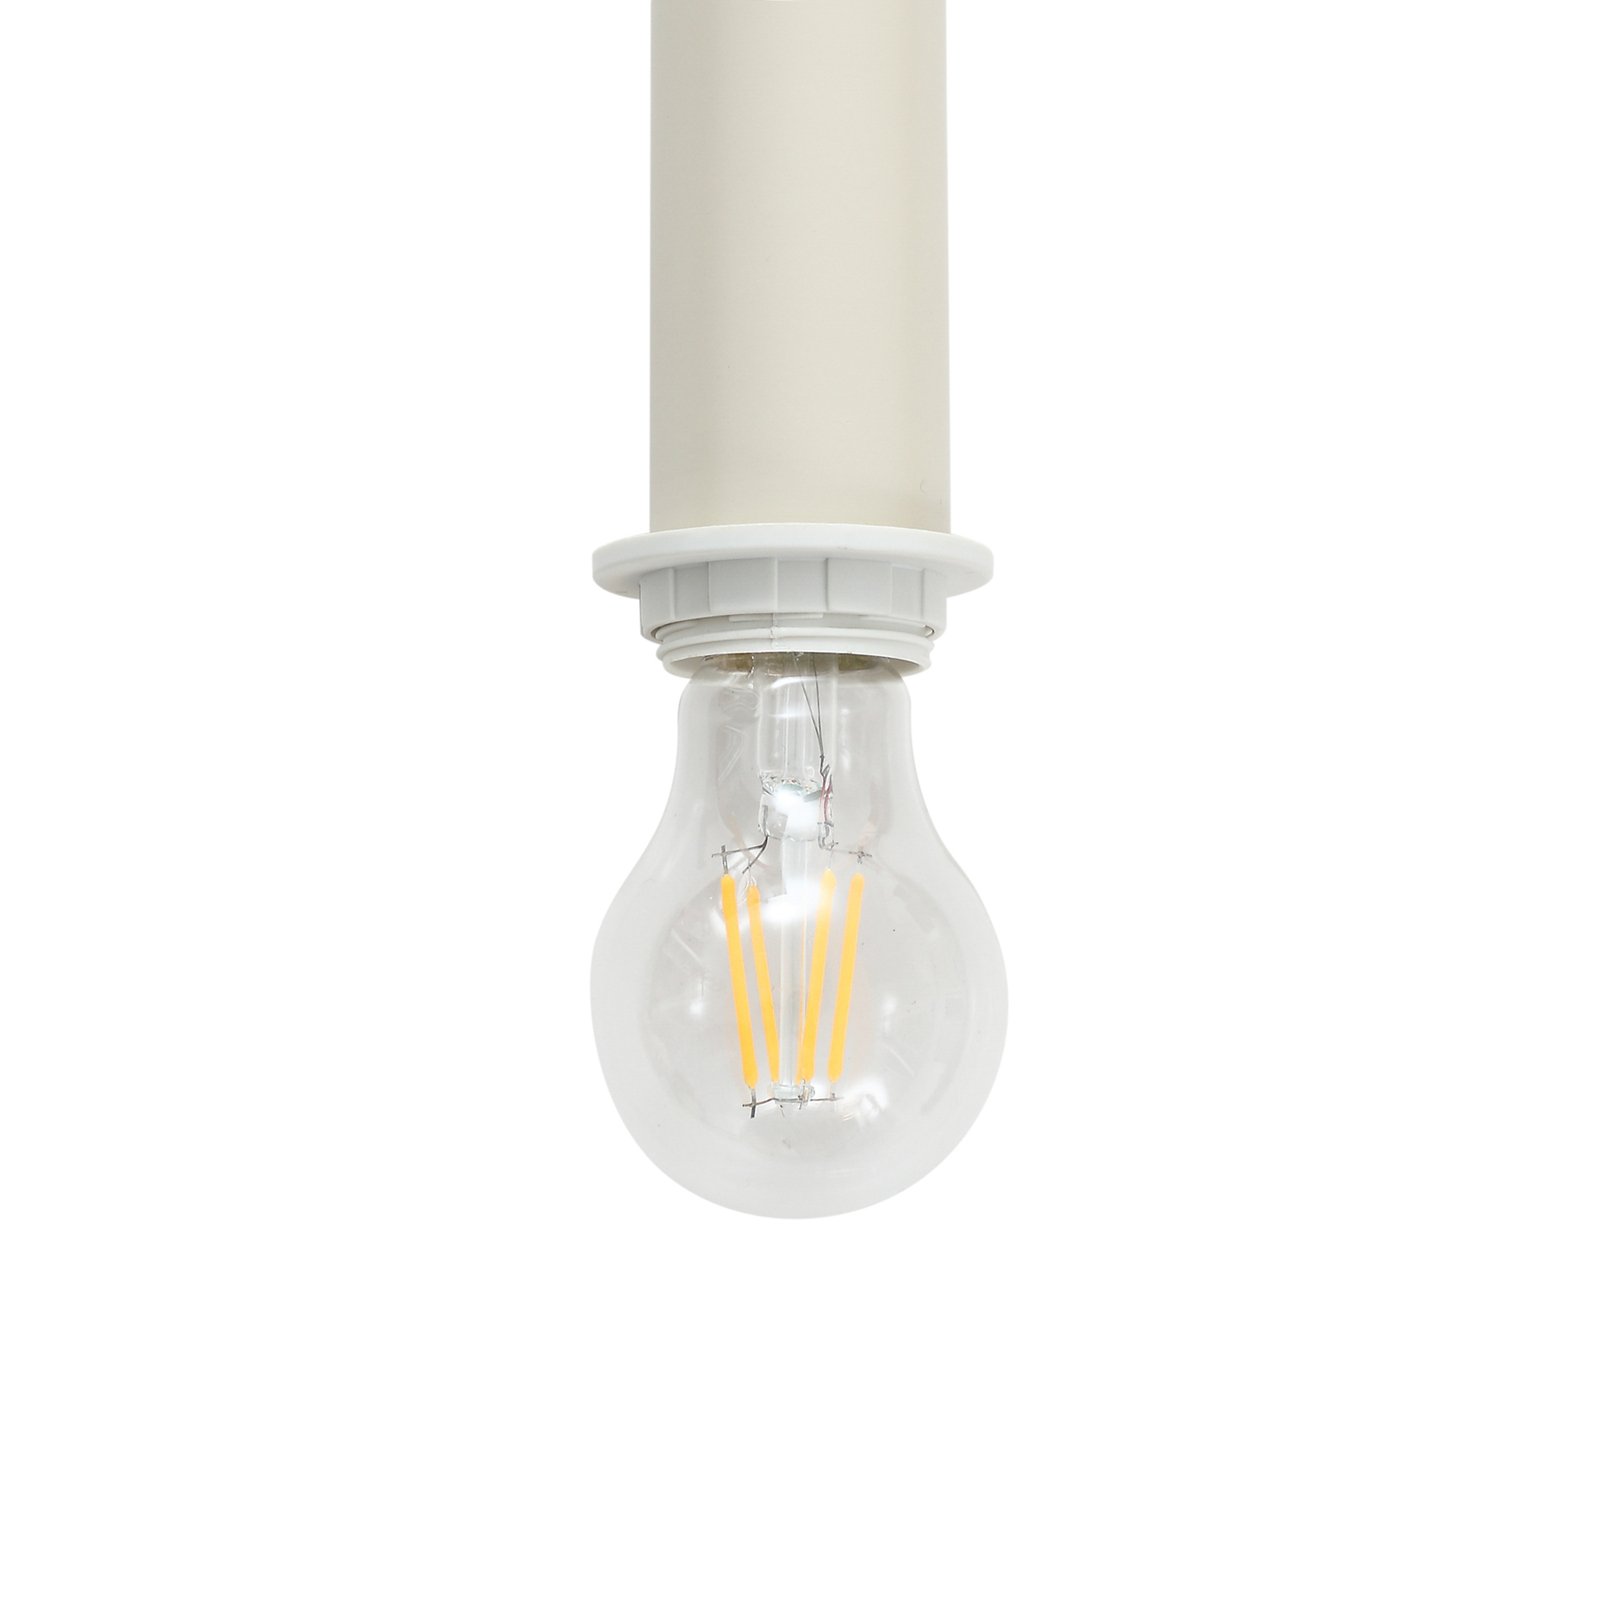 Lindby hanglamp Ovelia, beige, 4-lamps.